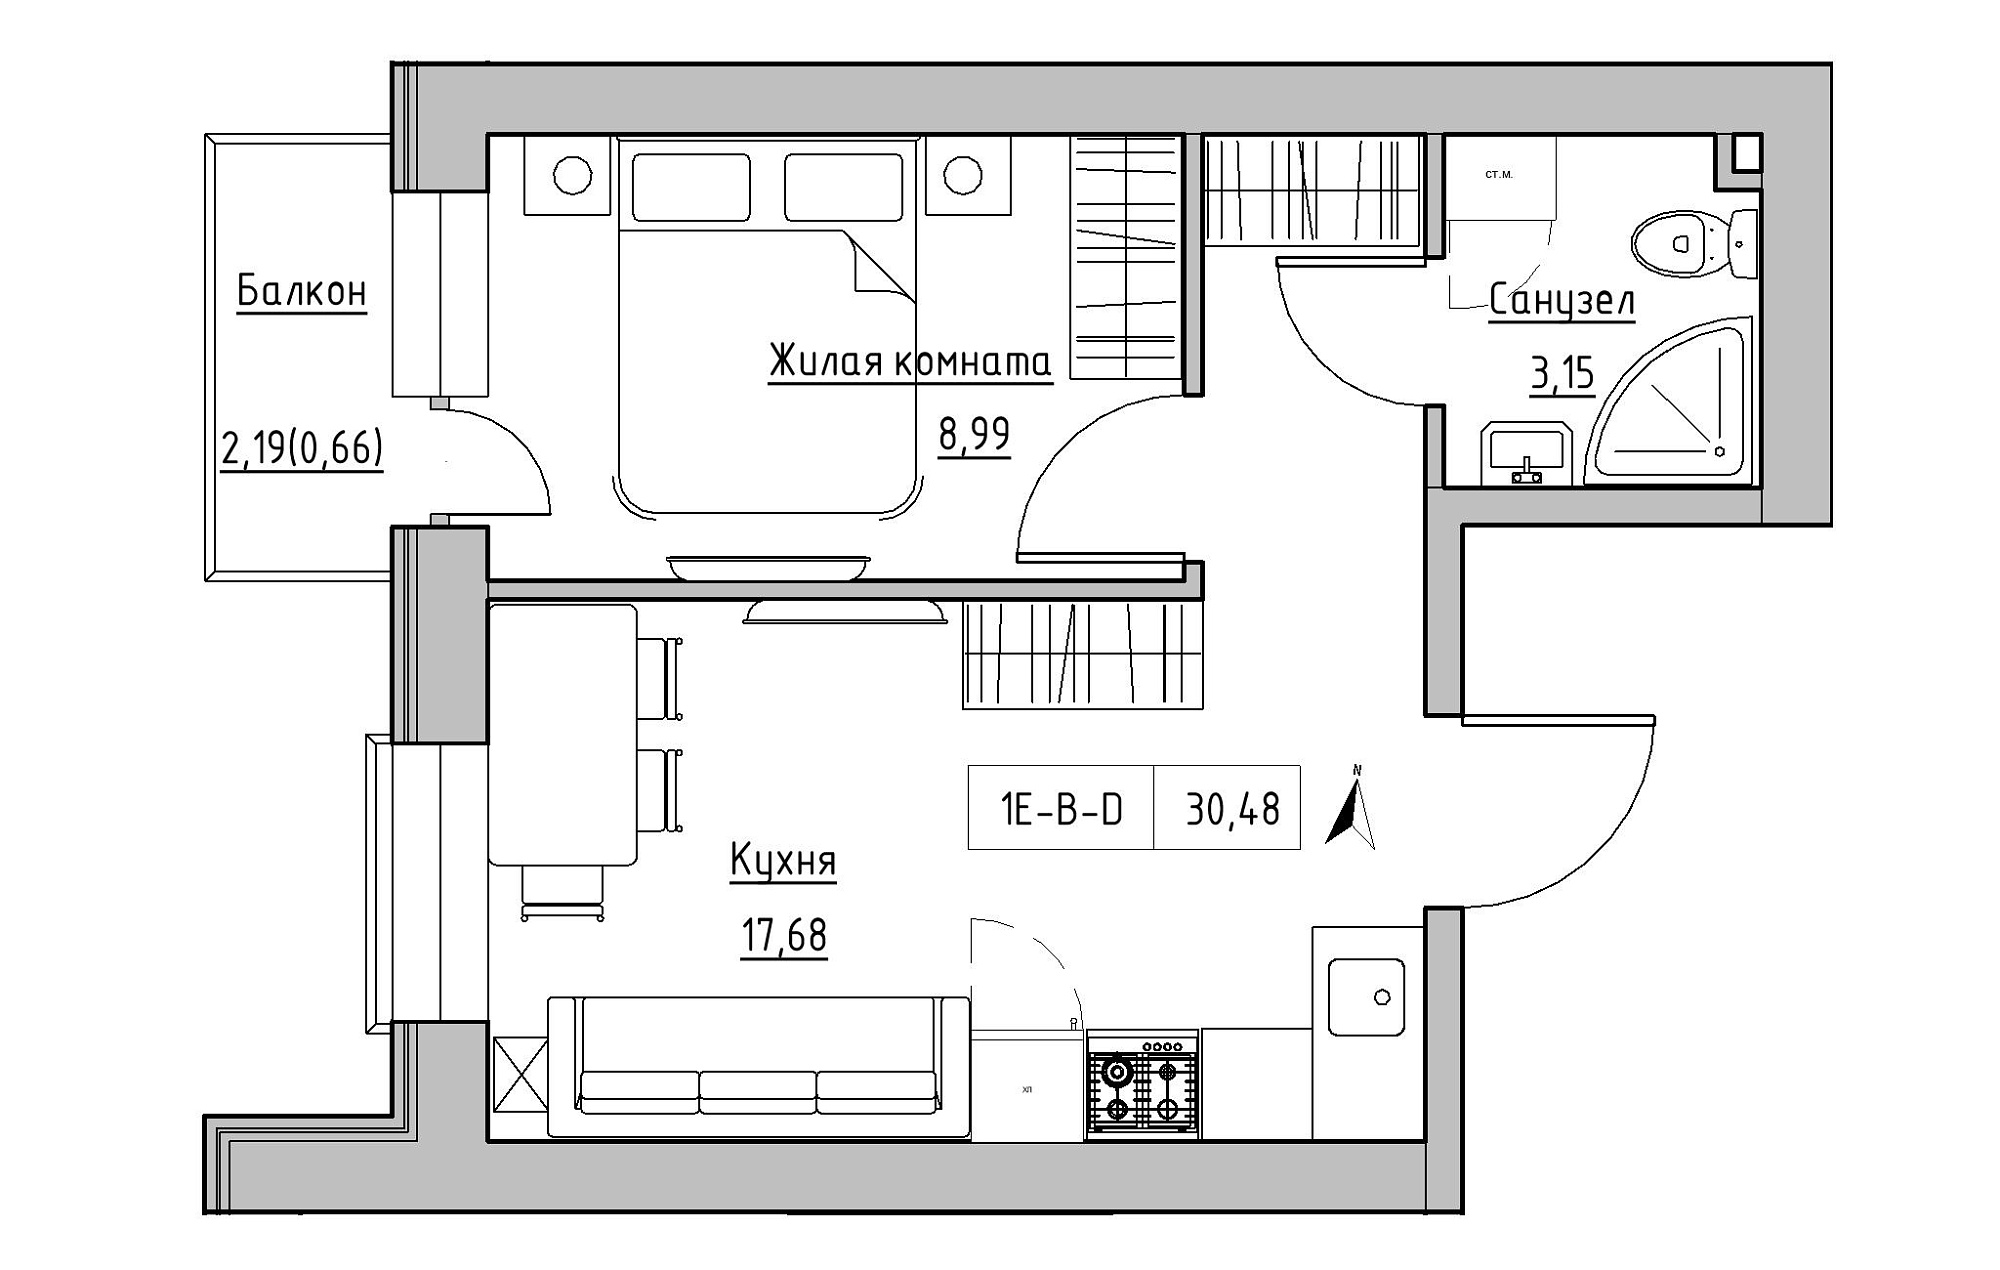 Планування 1-к квартира площею 30.48м2, KS-019-04/0003.